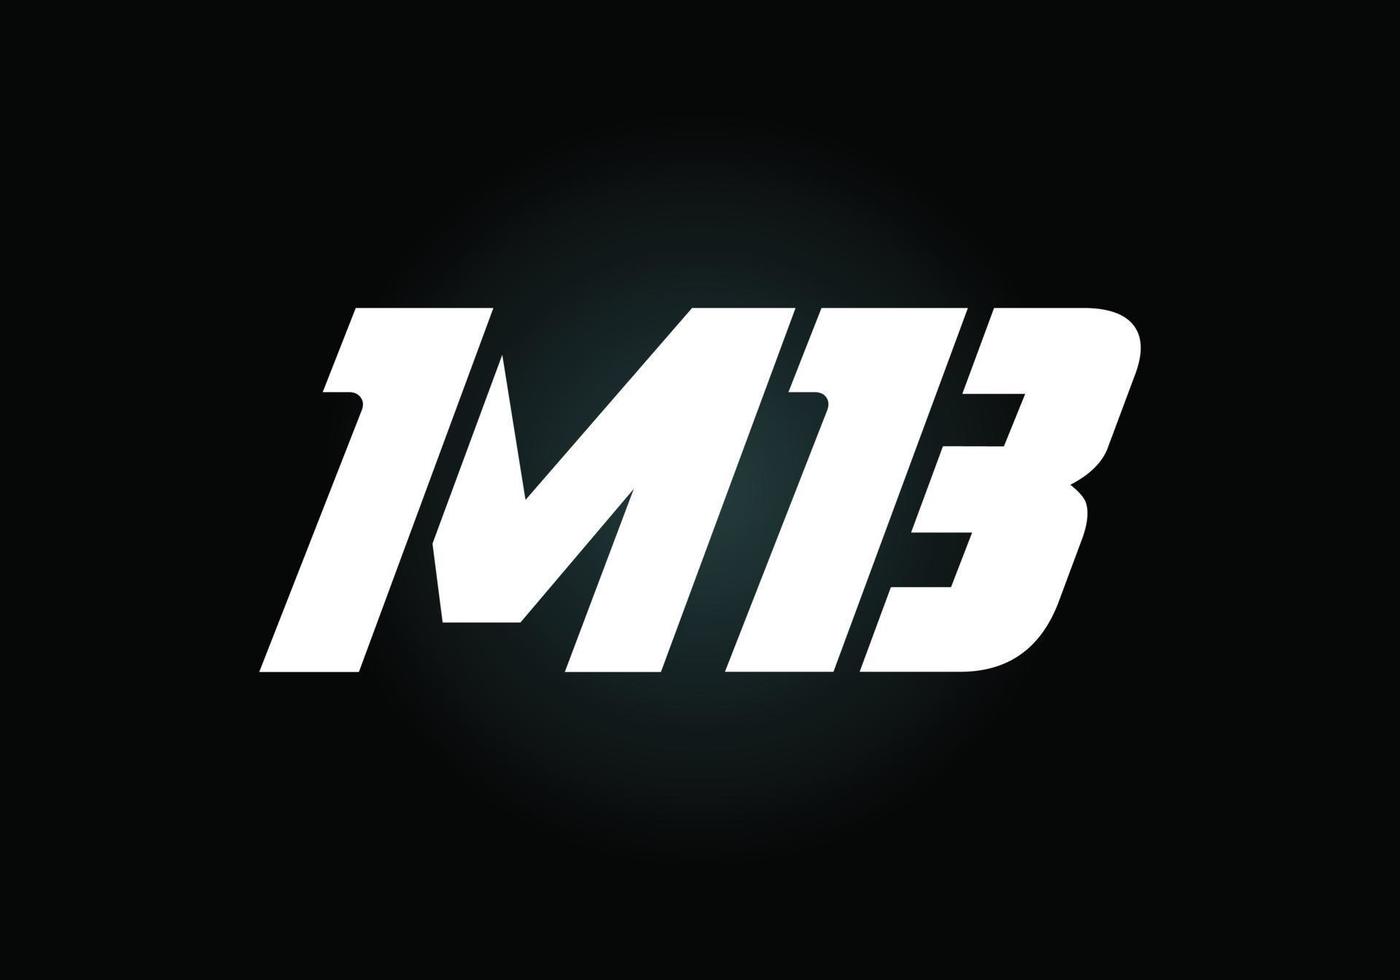 lettre initiale mb vecteur de conception de logo. symbole de l'alphabet graphique pour l'identité de l'entreprise